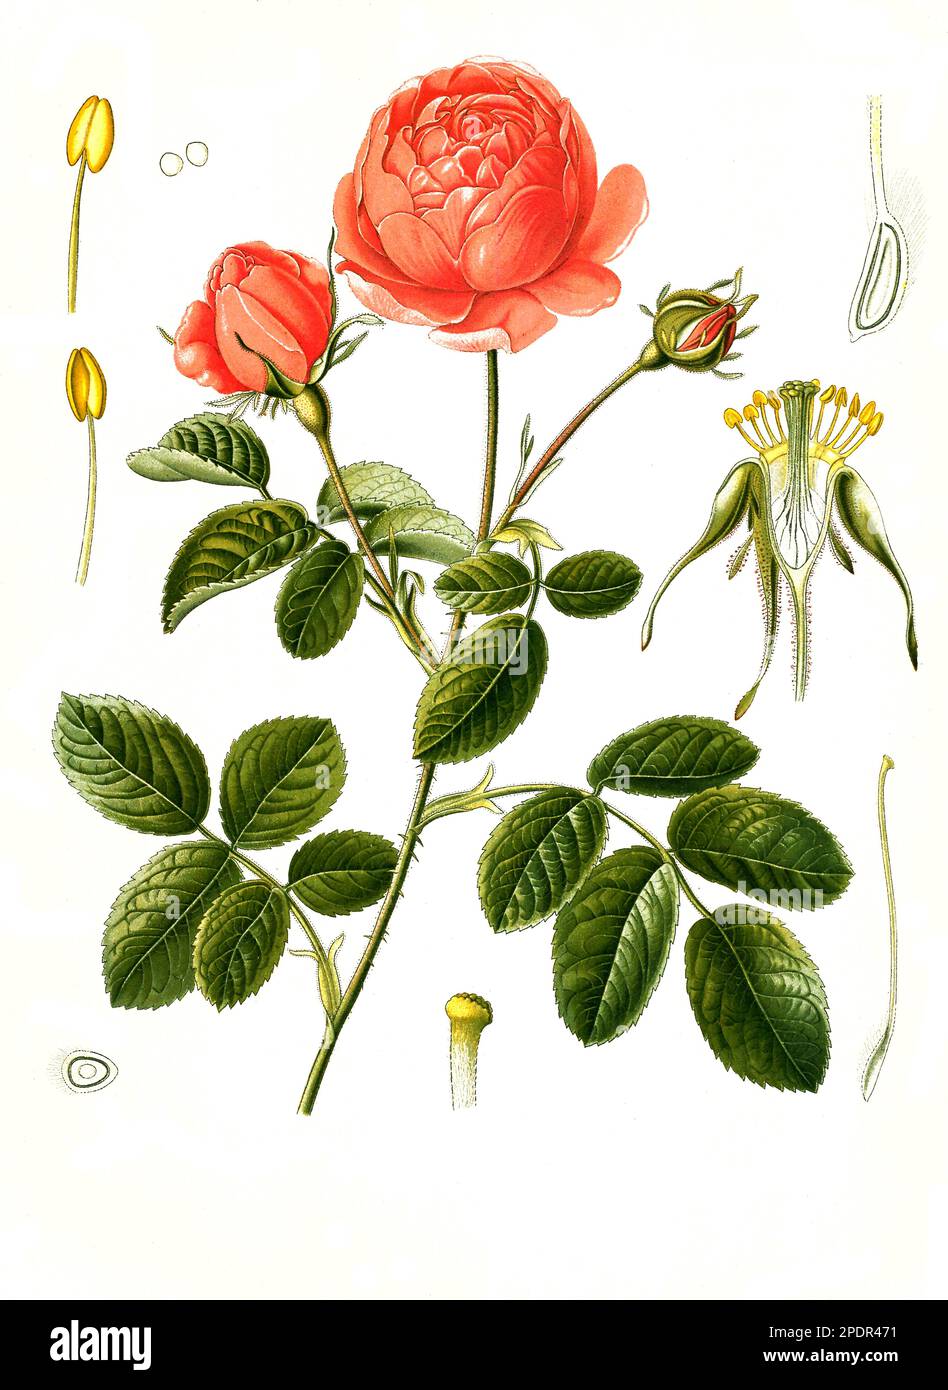 Heilpflanze, Rosa x centifolia, auch Zentifolie, eine Rosengruppe mit gefüllten Blüten, die zu den alten Rosen zählt, Historisch, digital restaurierte Reproduktion von einer Vorlage aus dem 19. Jahrhundert, Foto de stock